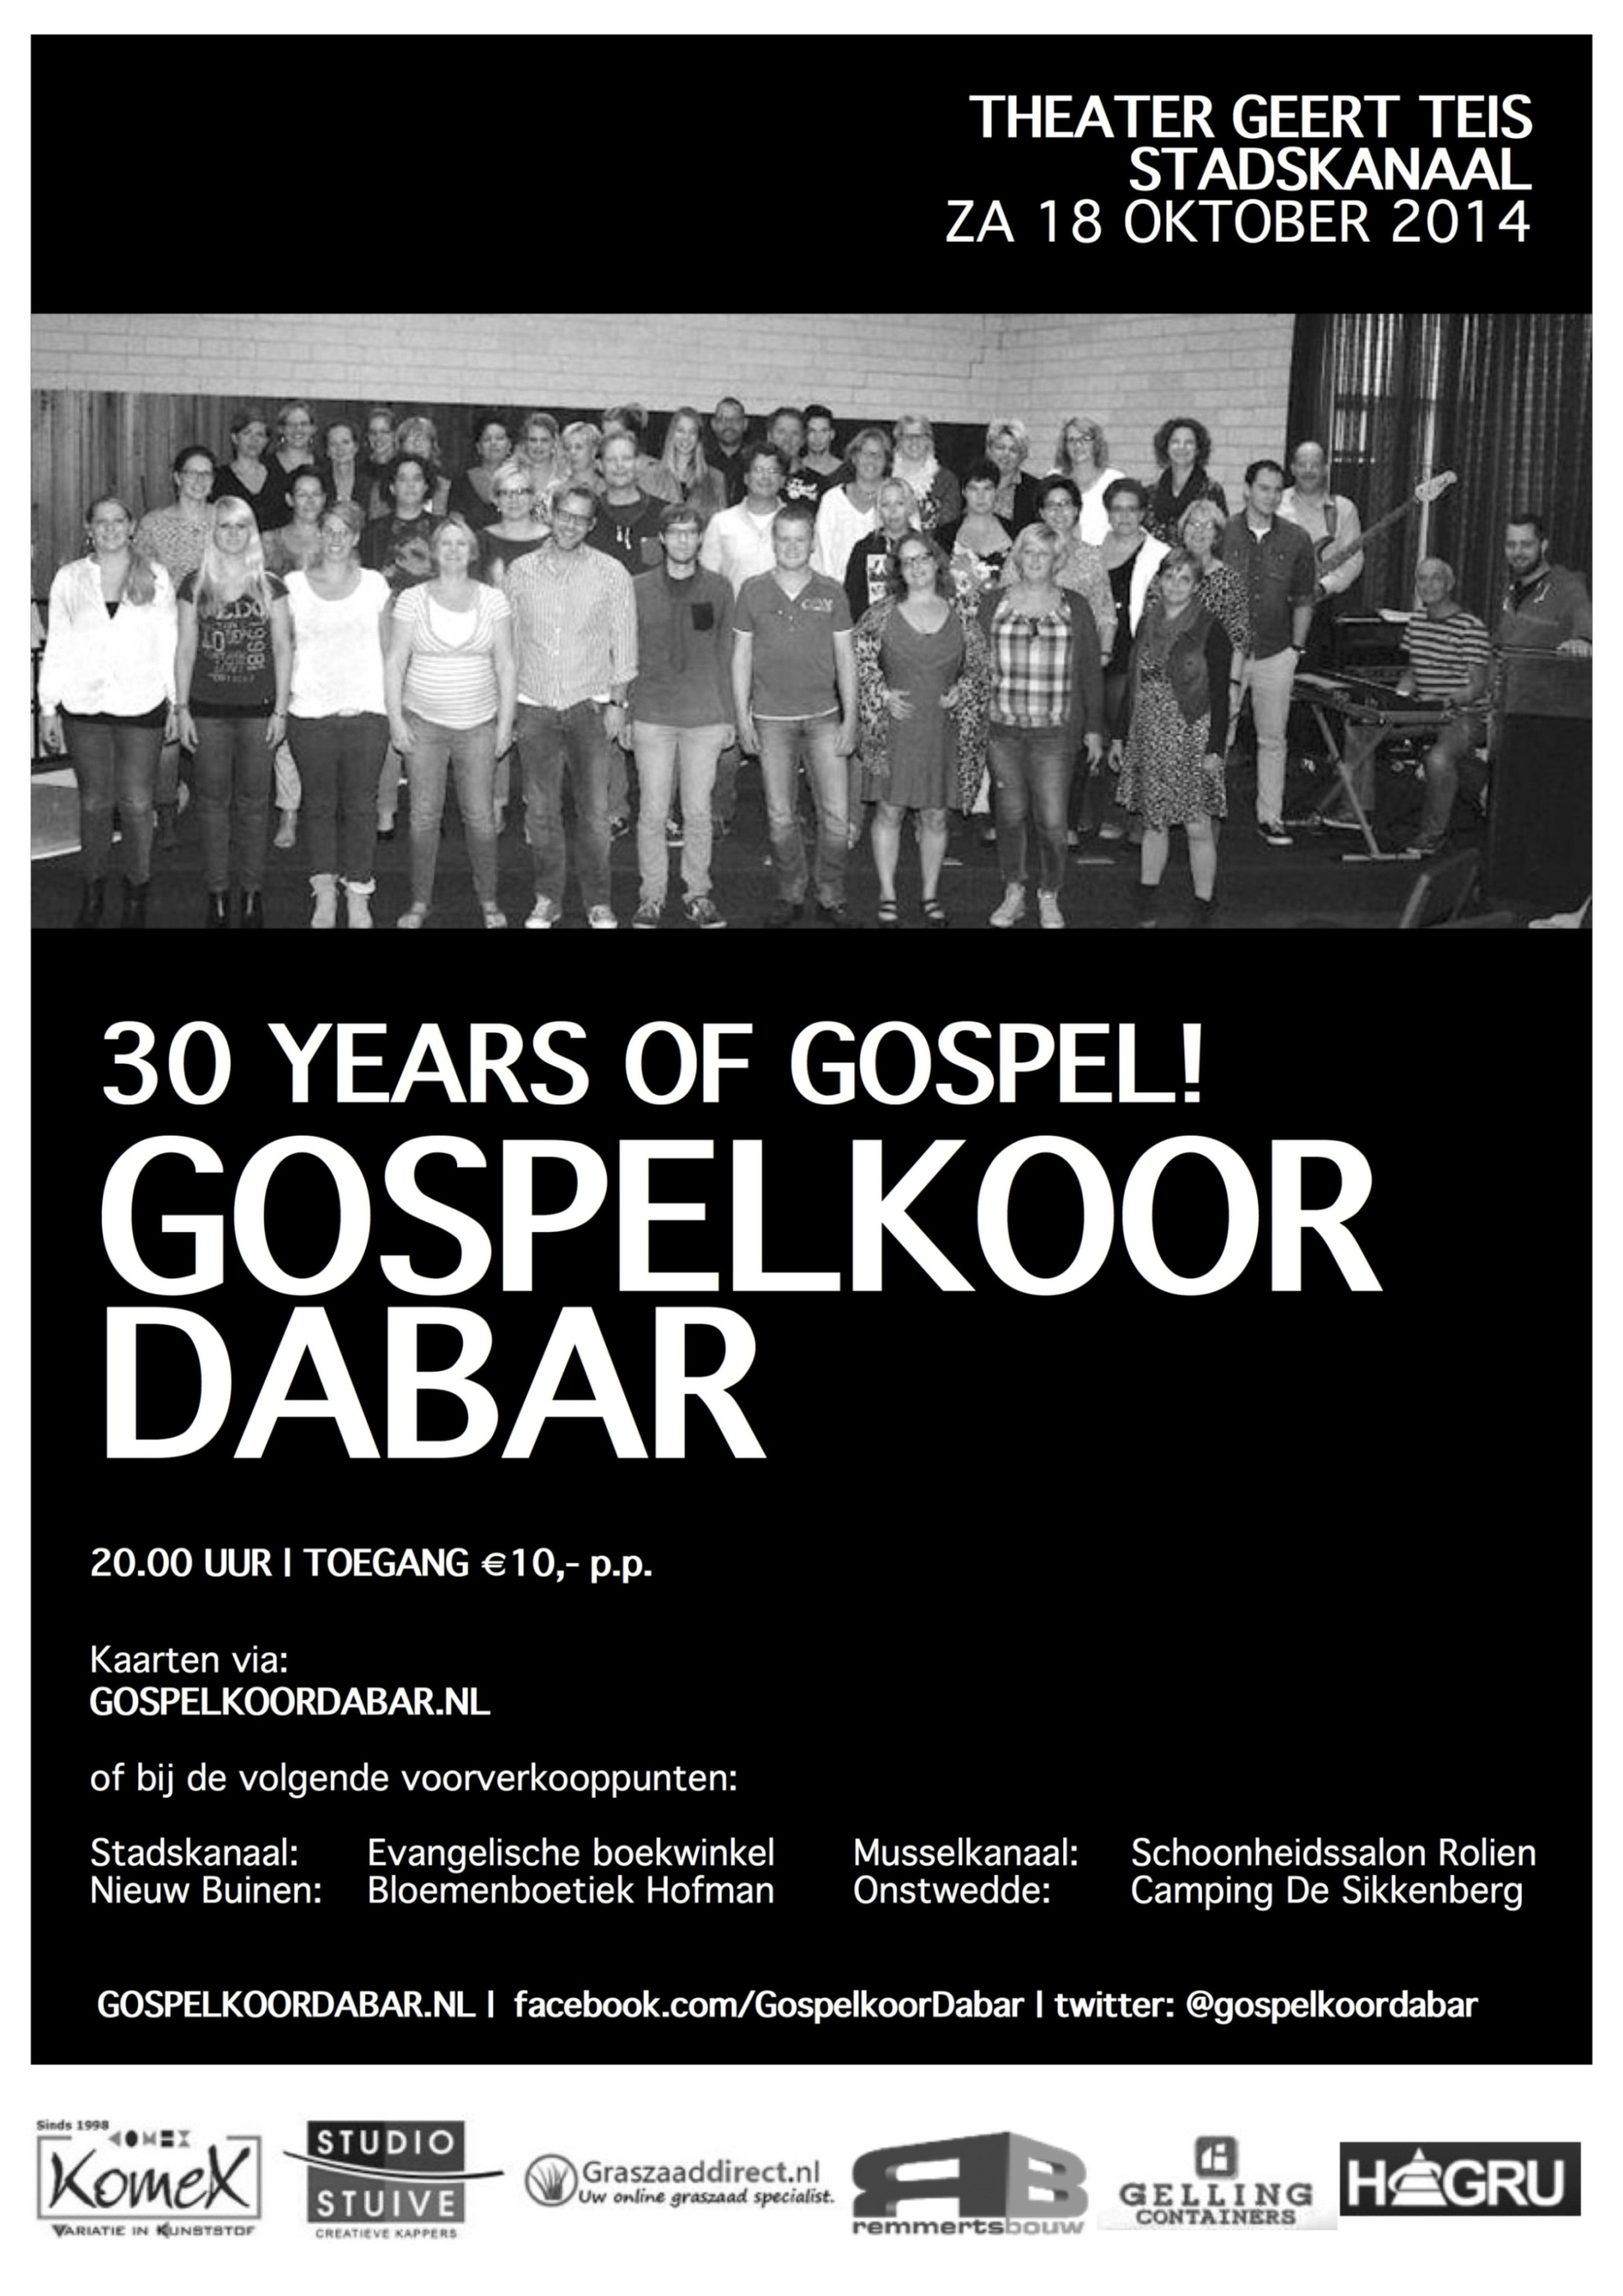 30 years of gospel 2014 zwart wit